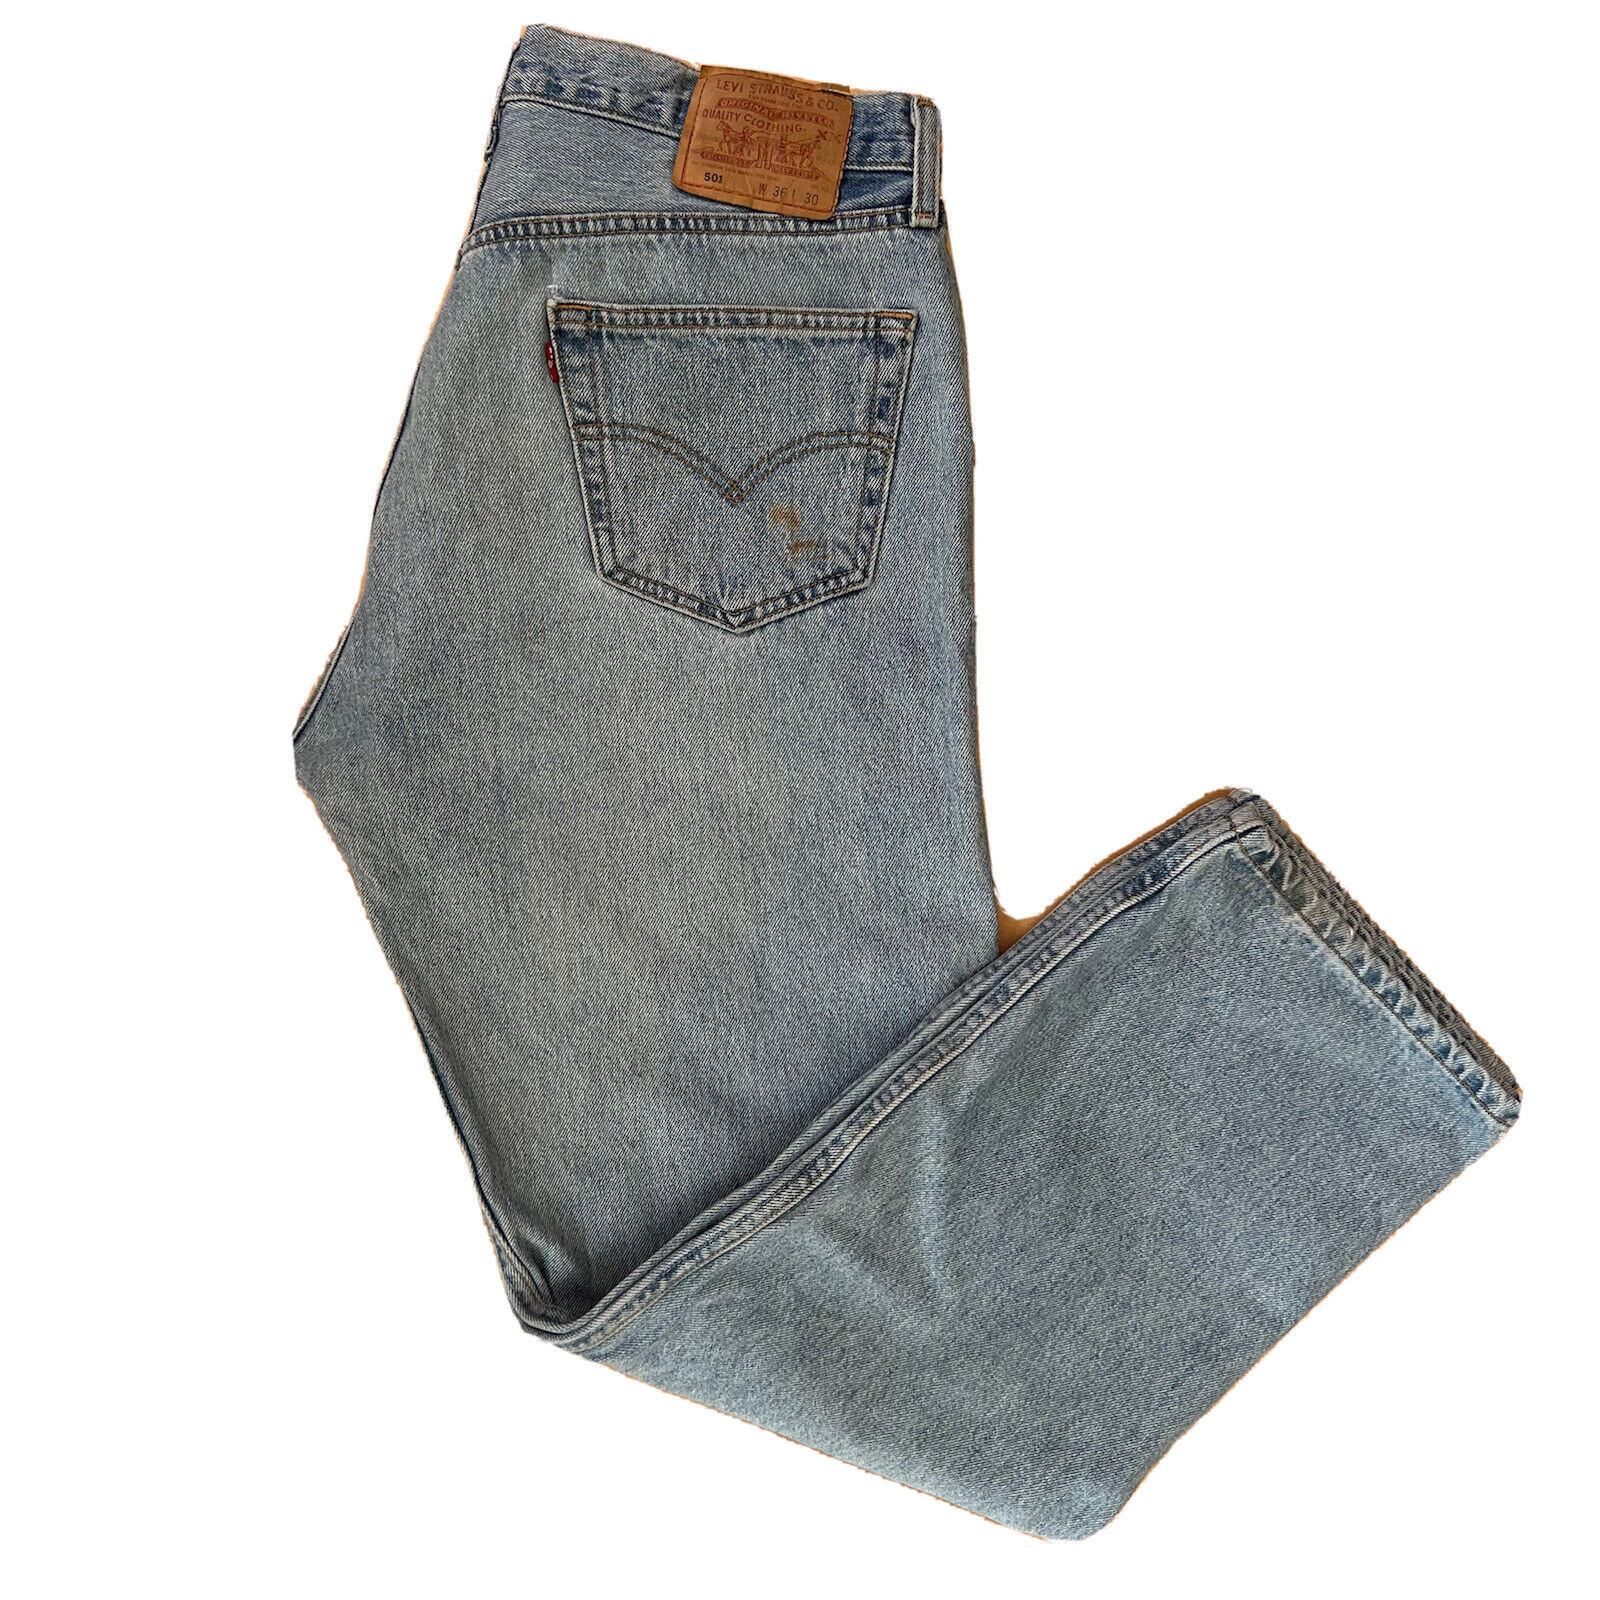 Vintage Levis 501 Jeans 36x30 Blue 90s Denim Distress… - Gem